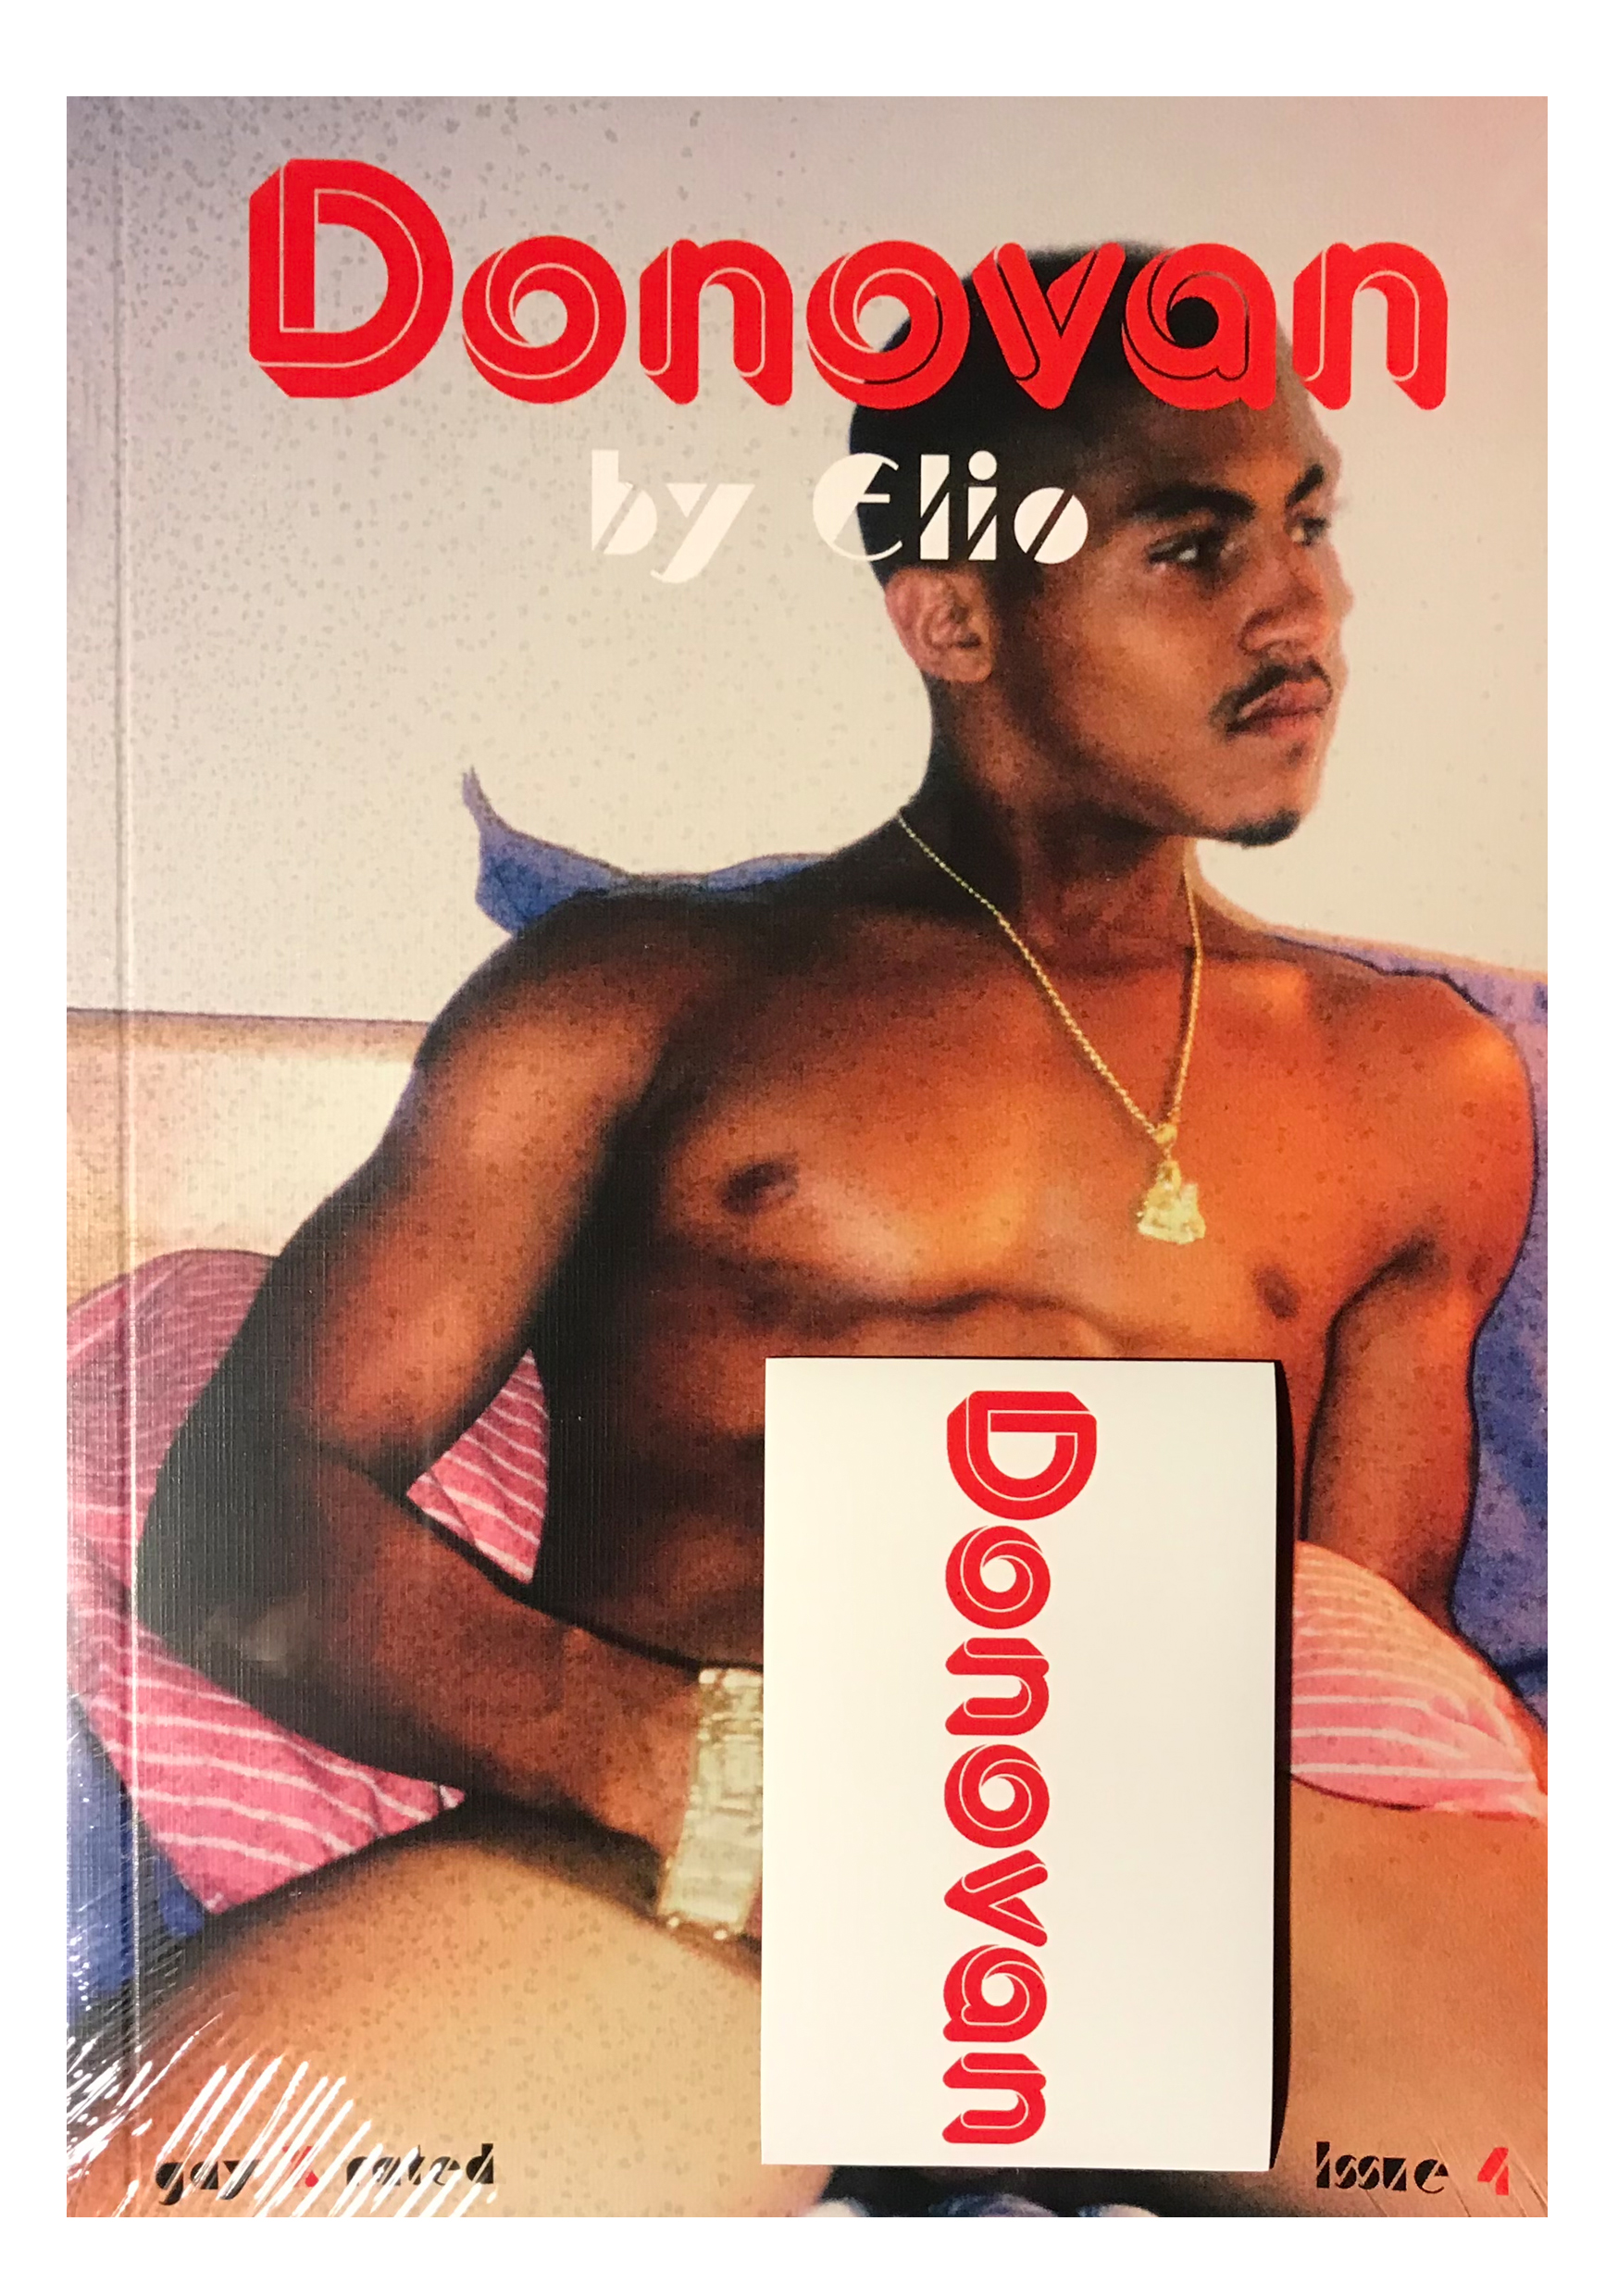 Revista Donovan